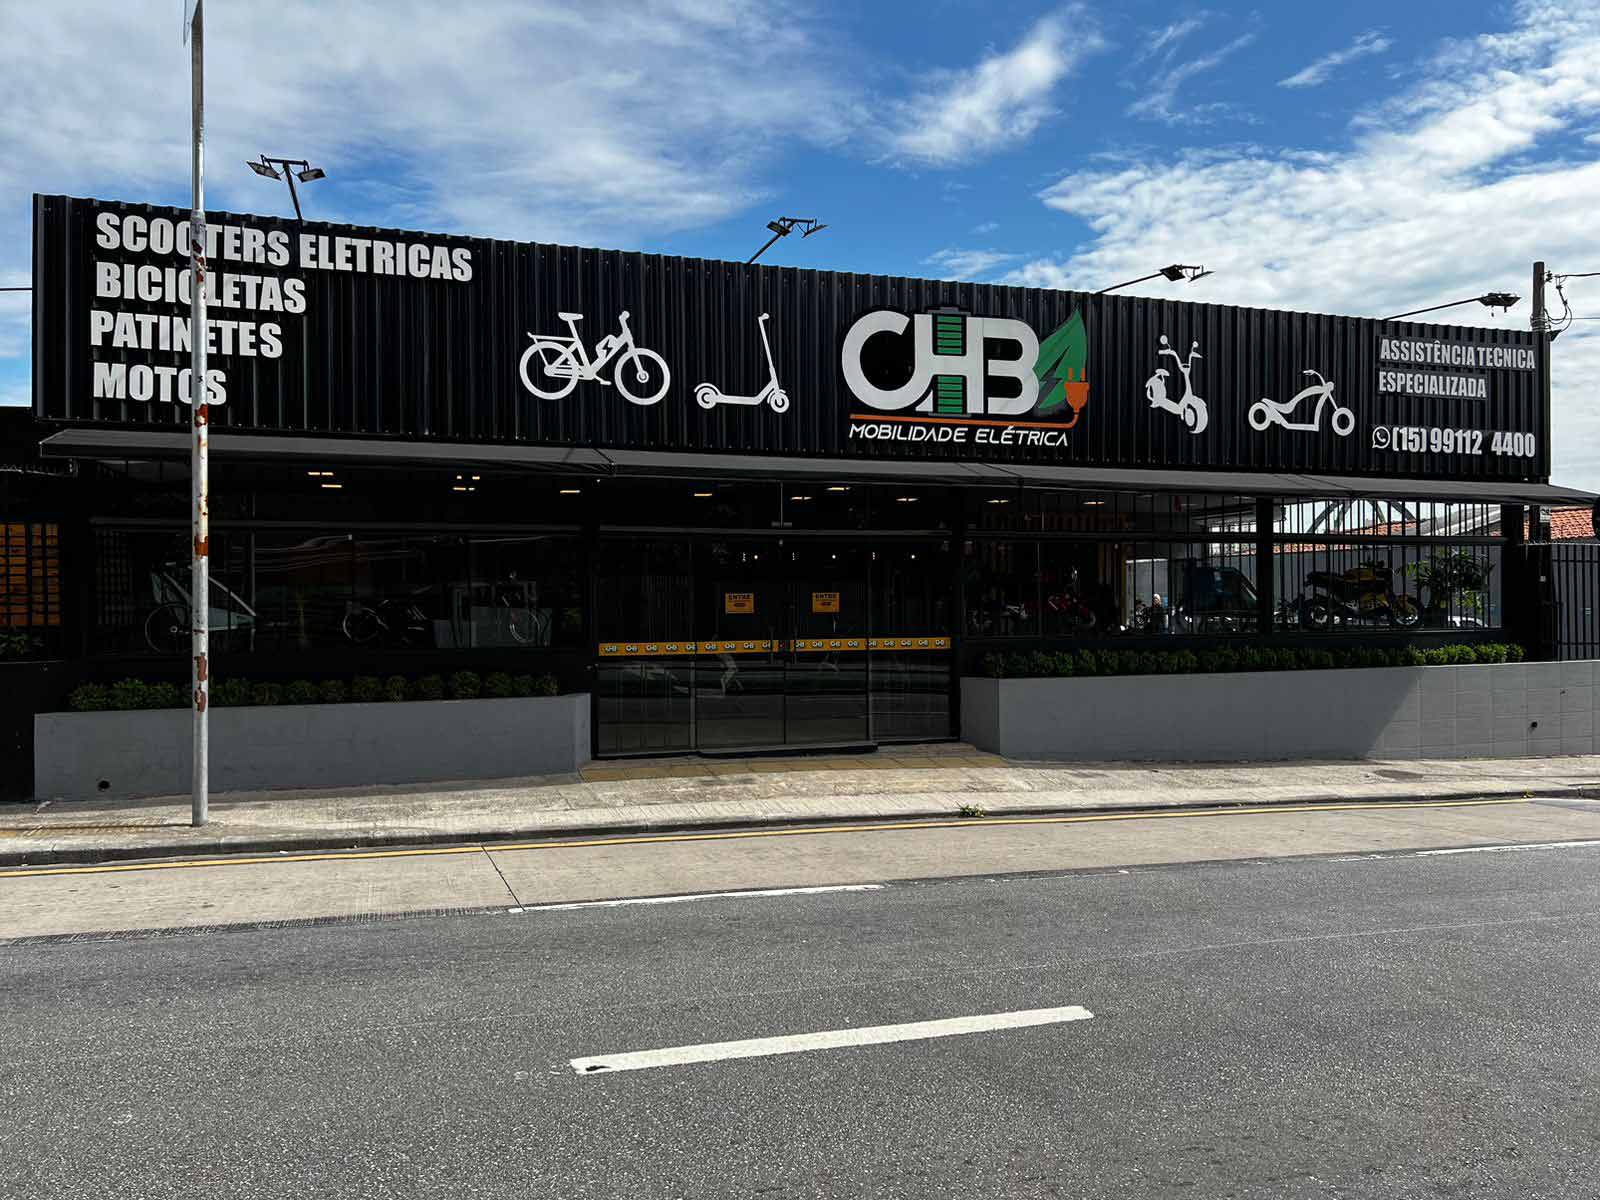 CHB manuntenção de moto e scooter elétrica em Sorocaba, Boituva, Ibiúna e Salto, SP.